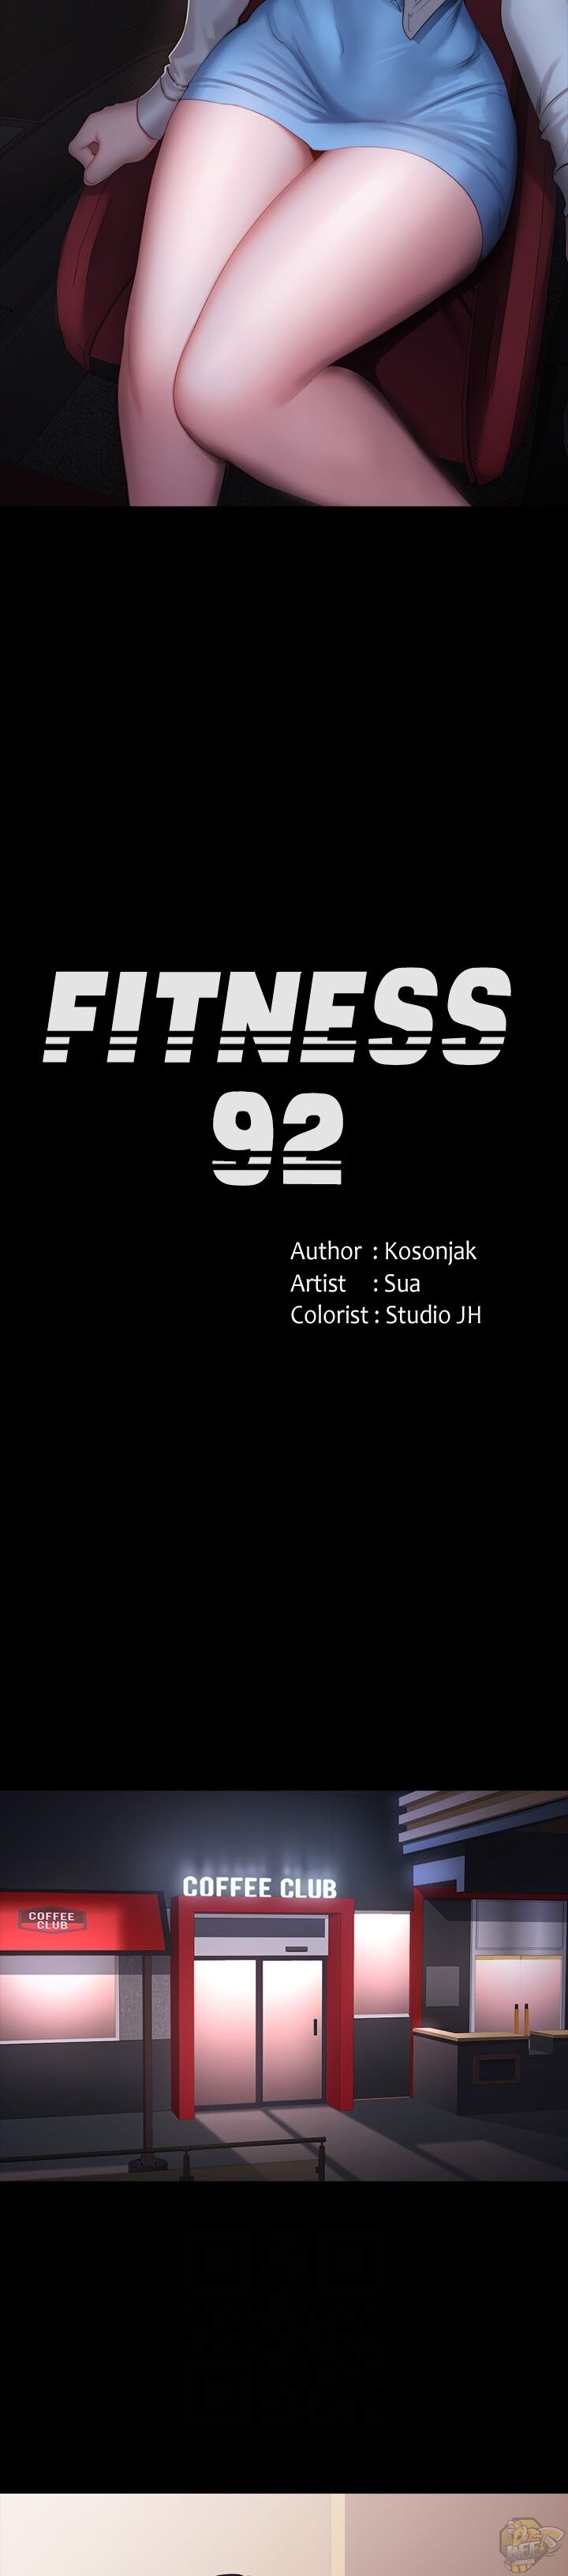 Fitness Chapter 92 - MyToon.net